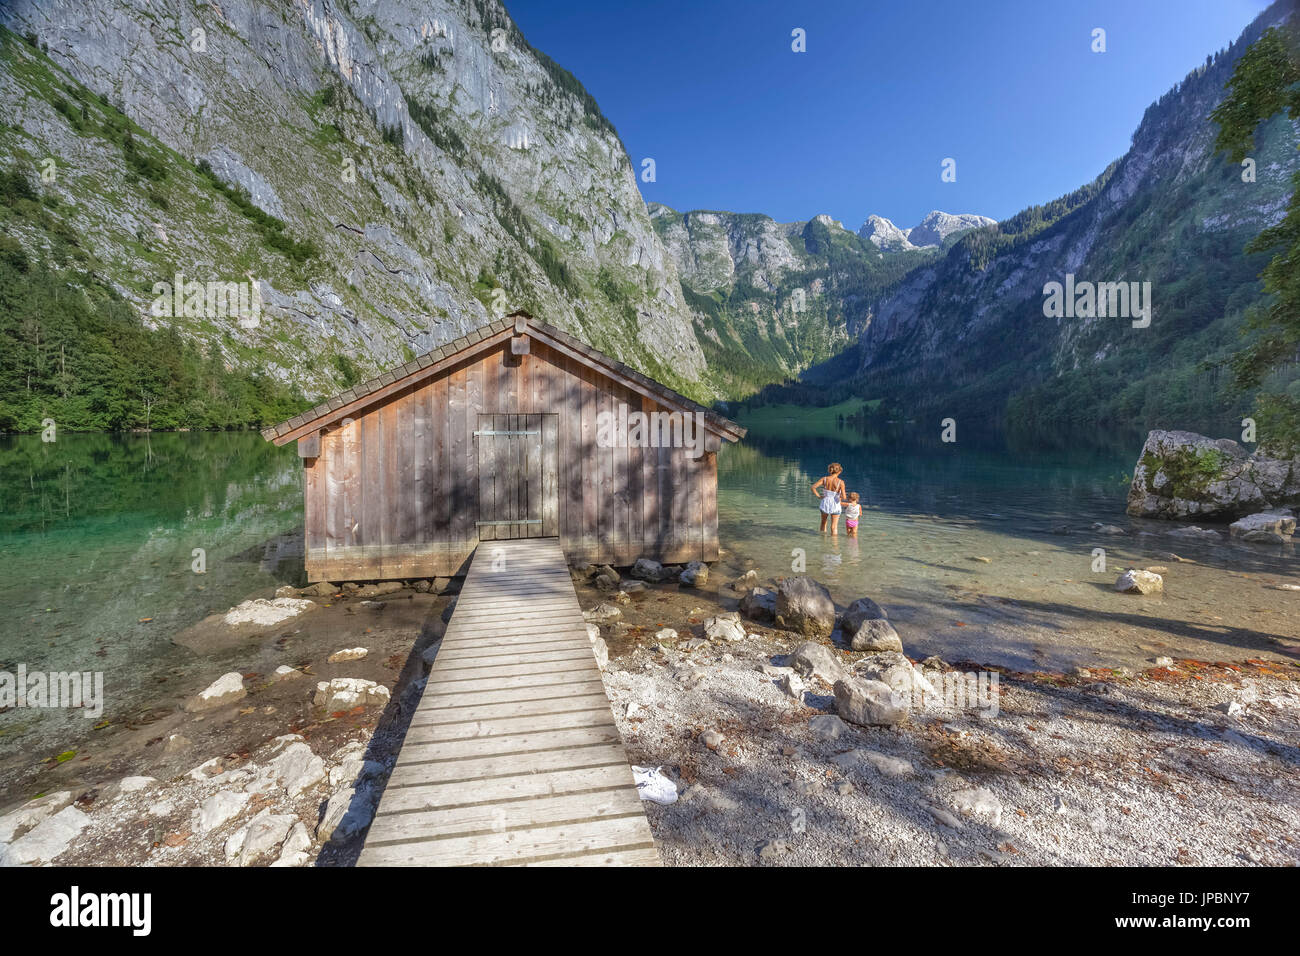 L'Europa, in Germania, in Baviera, a Berchtesgaden. Imbarcadero hangar su Obersee lago alpino delle Alpi Foto Stock